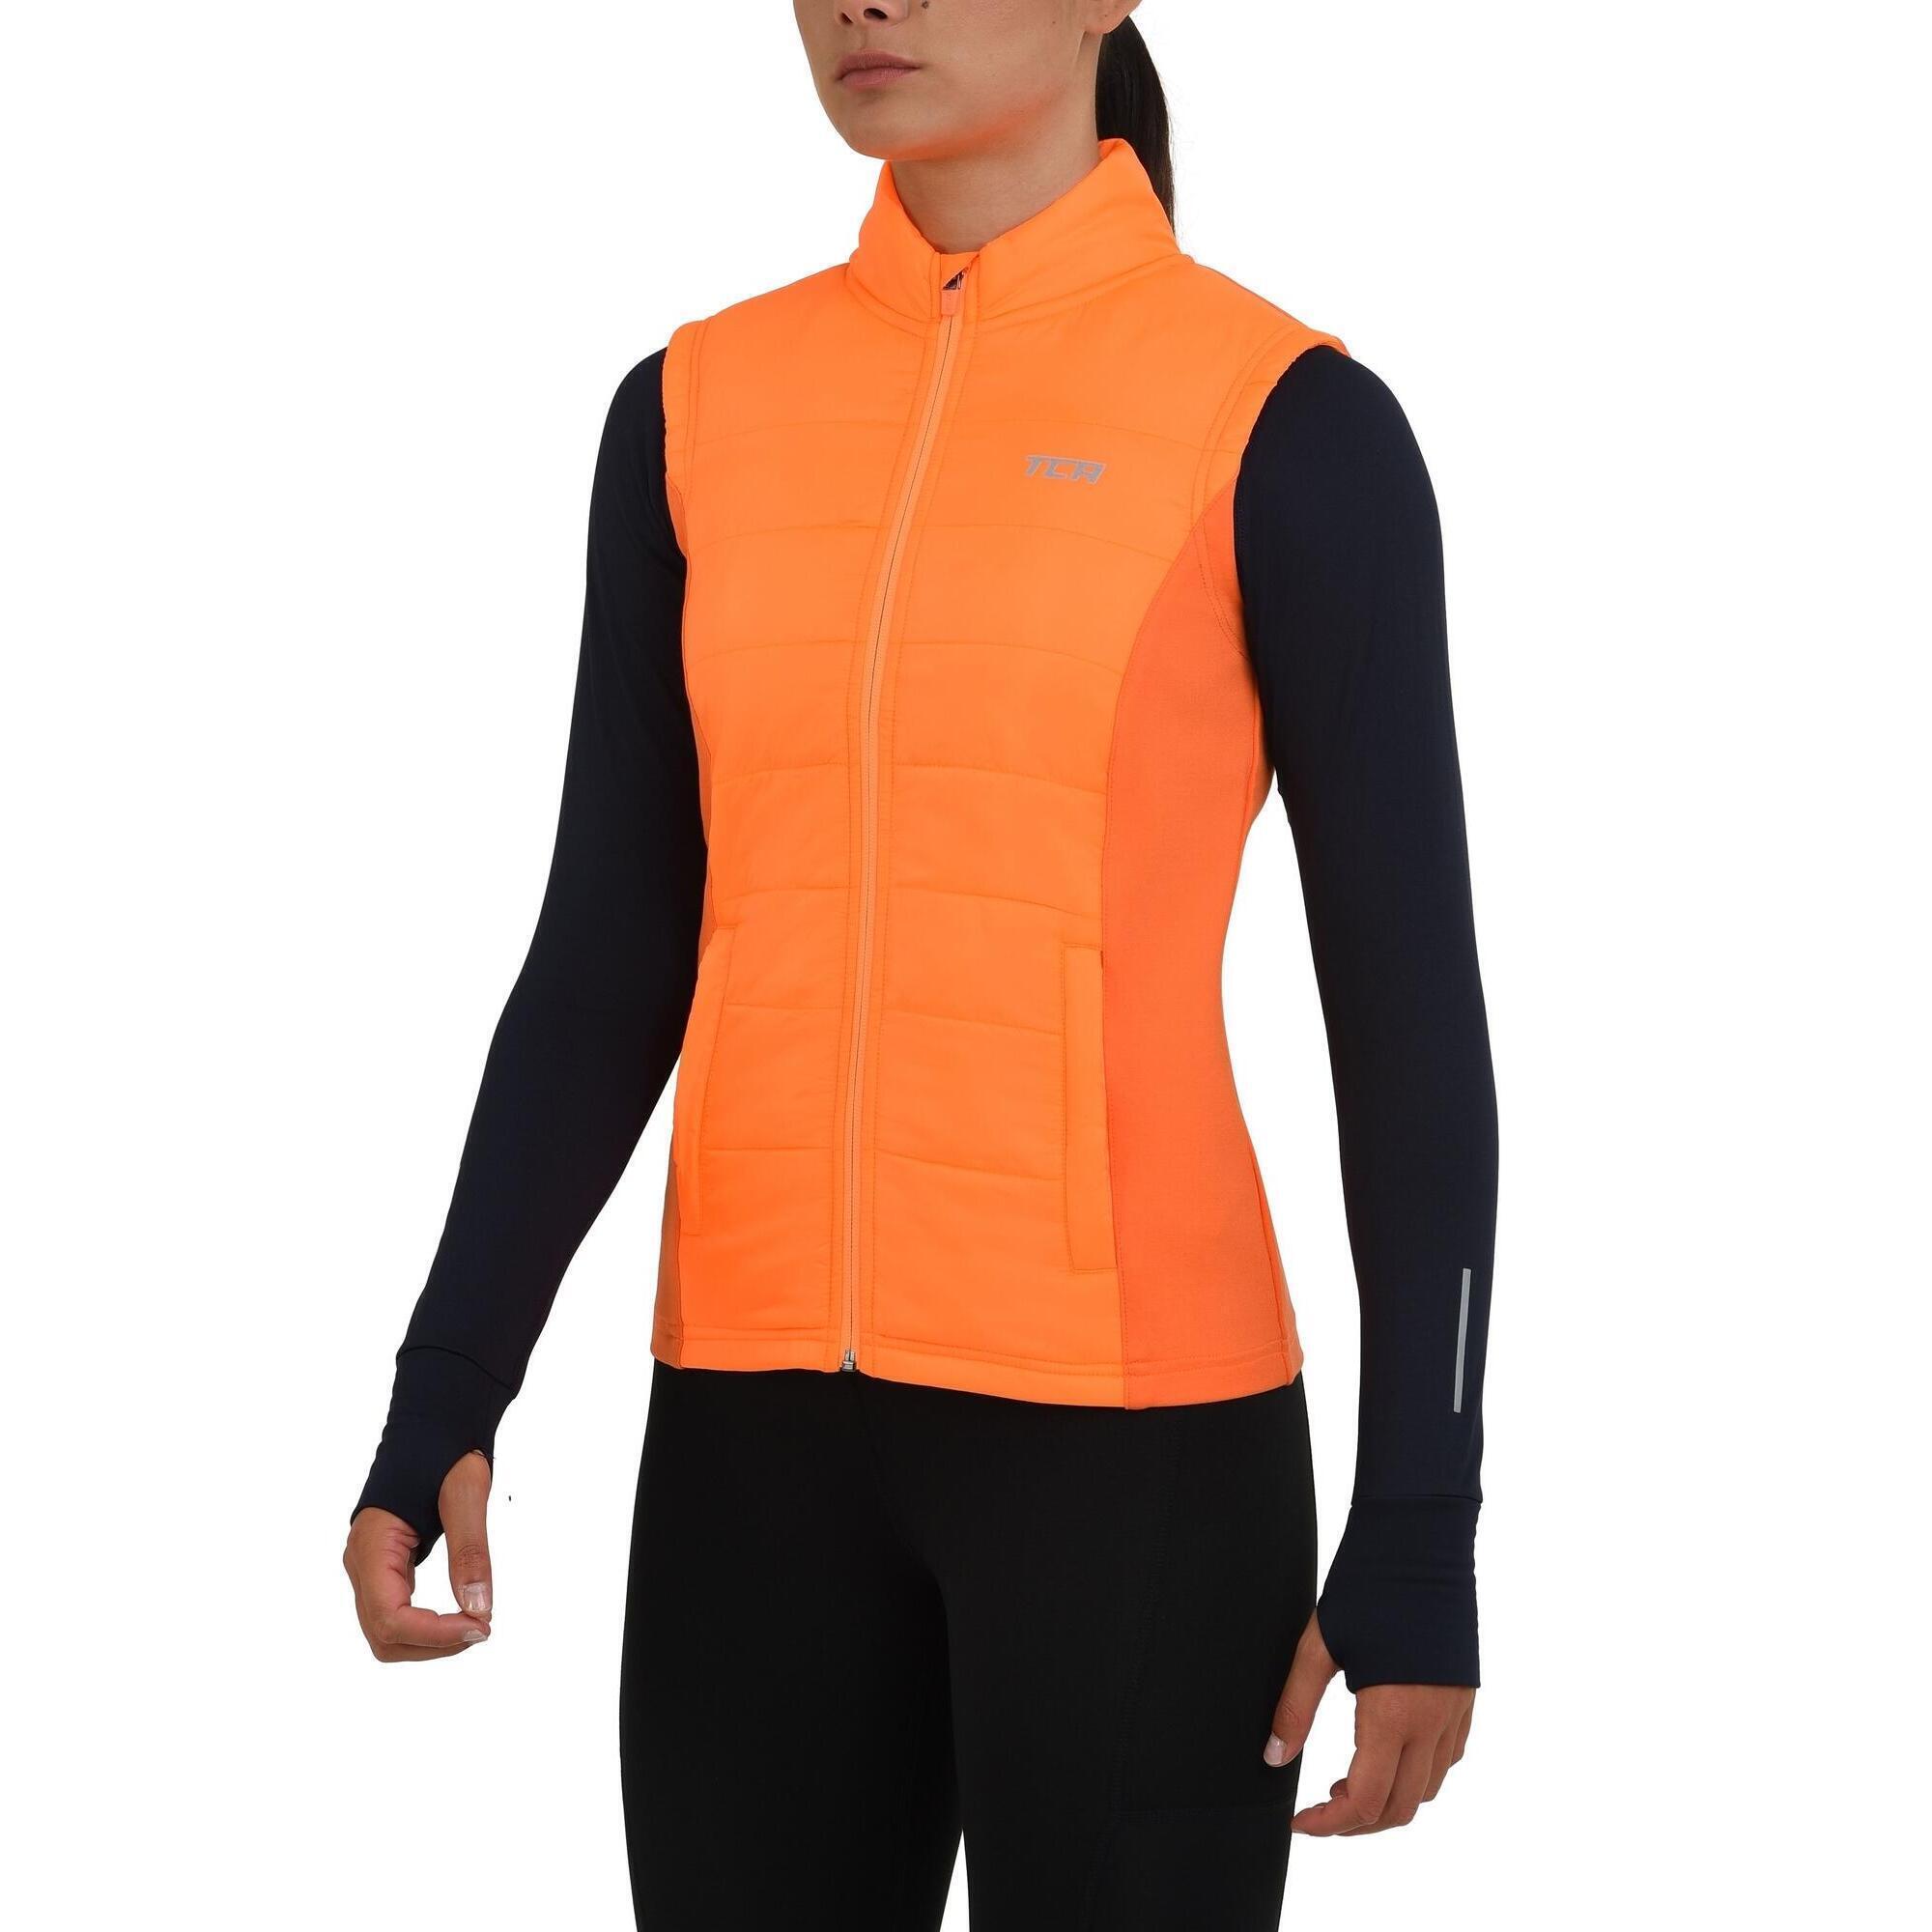 TCA Women's Excel Winter Gilet with Zip Pockets - Neon Orange